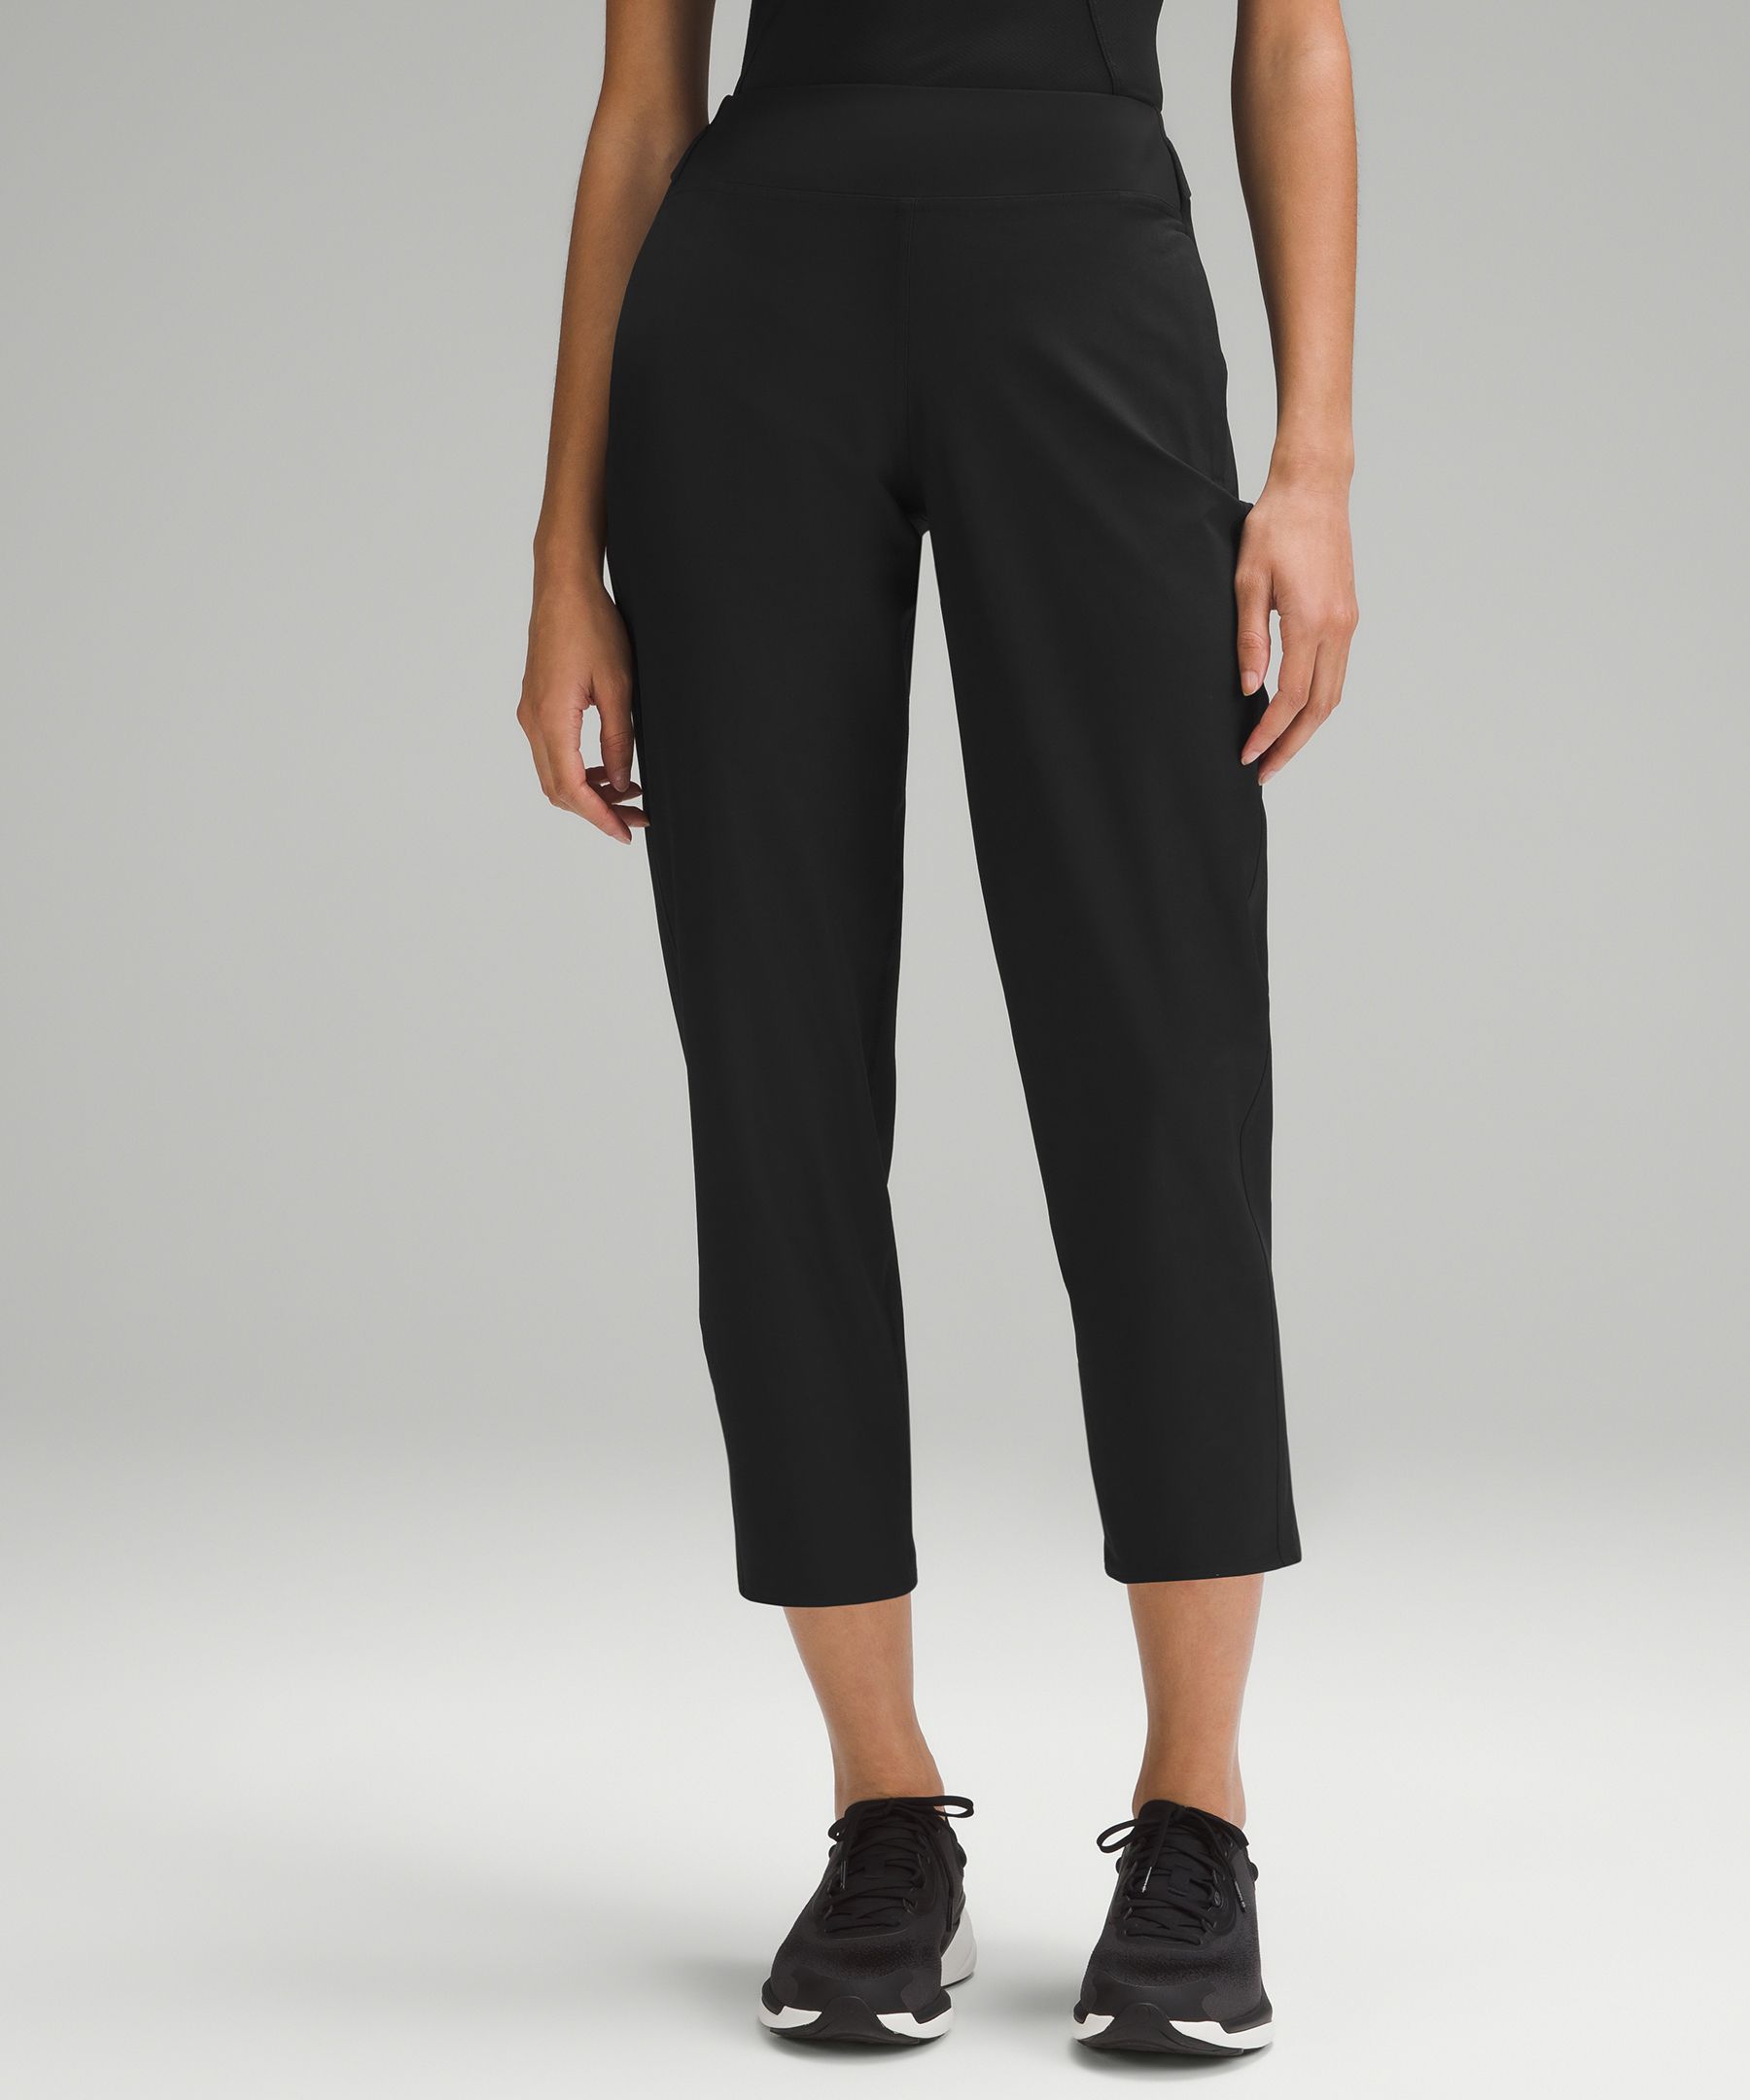 🩷 VALENTINE'S SALE 🩷 LULULEMON City Trek Trouser Slacks - Black, Good  for Office Work or Travel